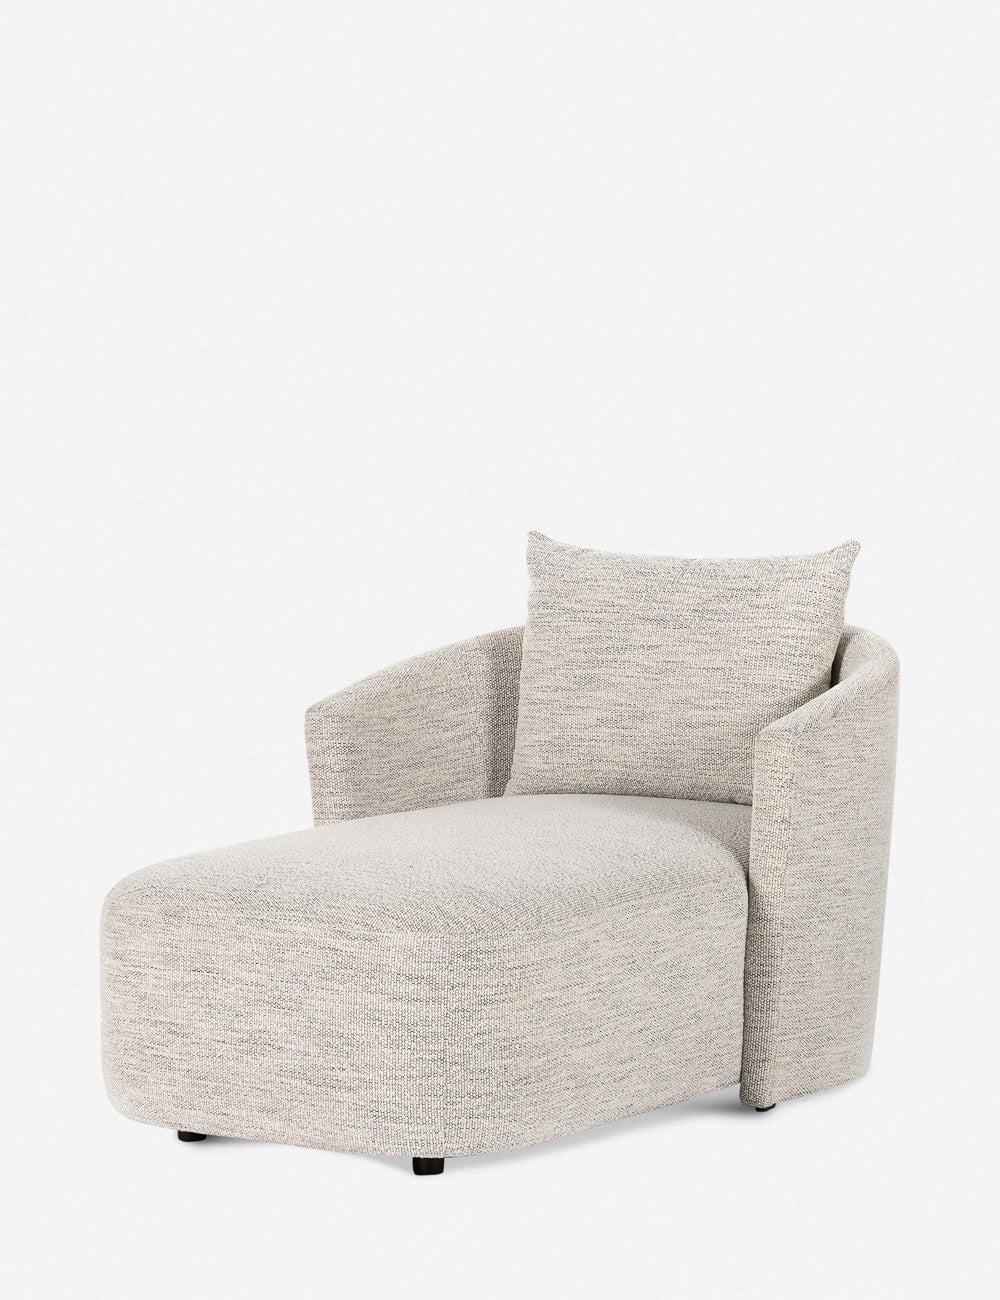 Merino Cotton White Contemporary Swivel Chaise Lounge